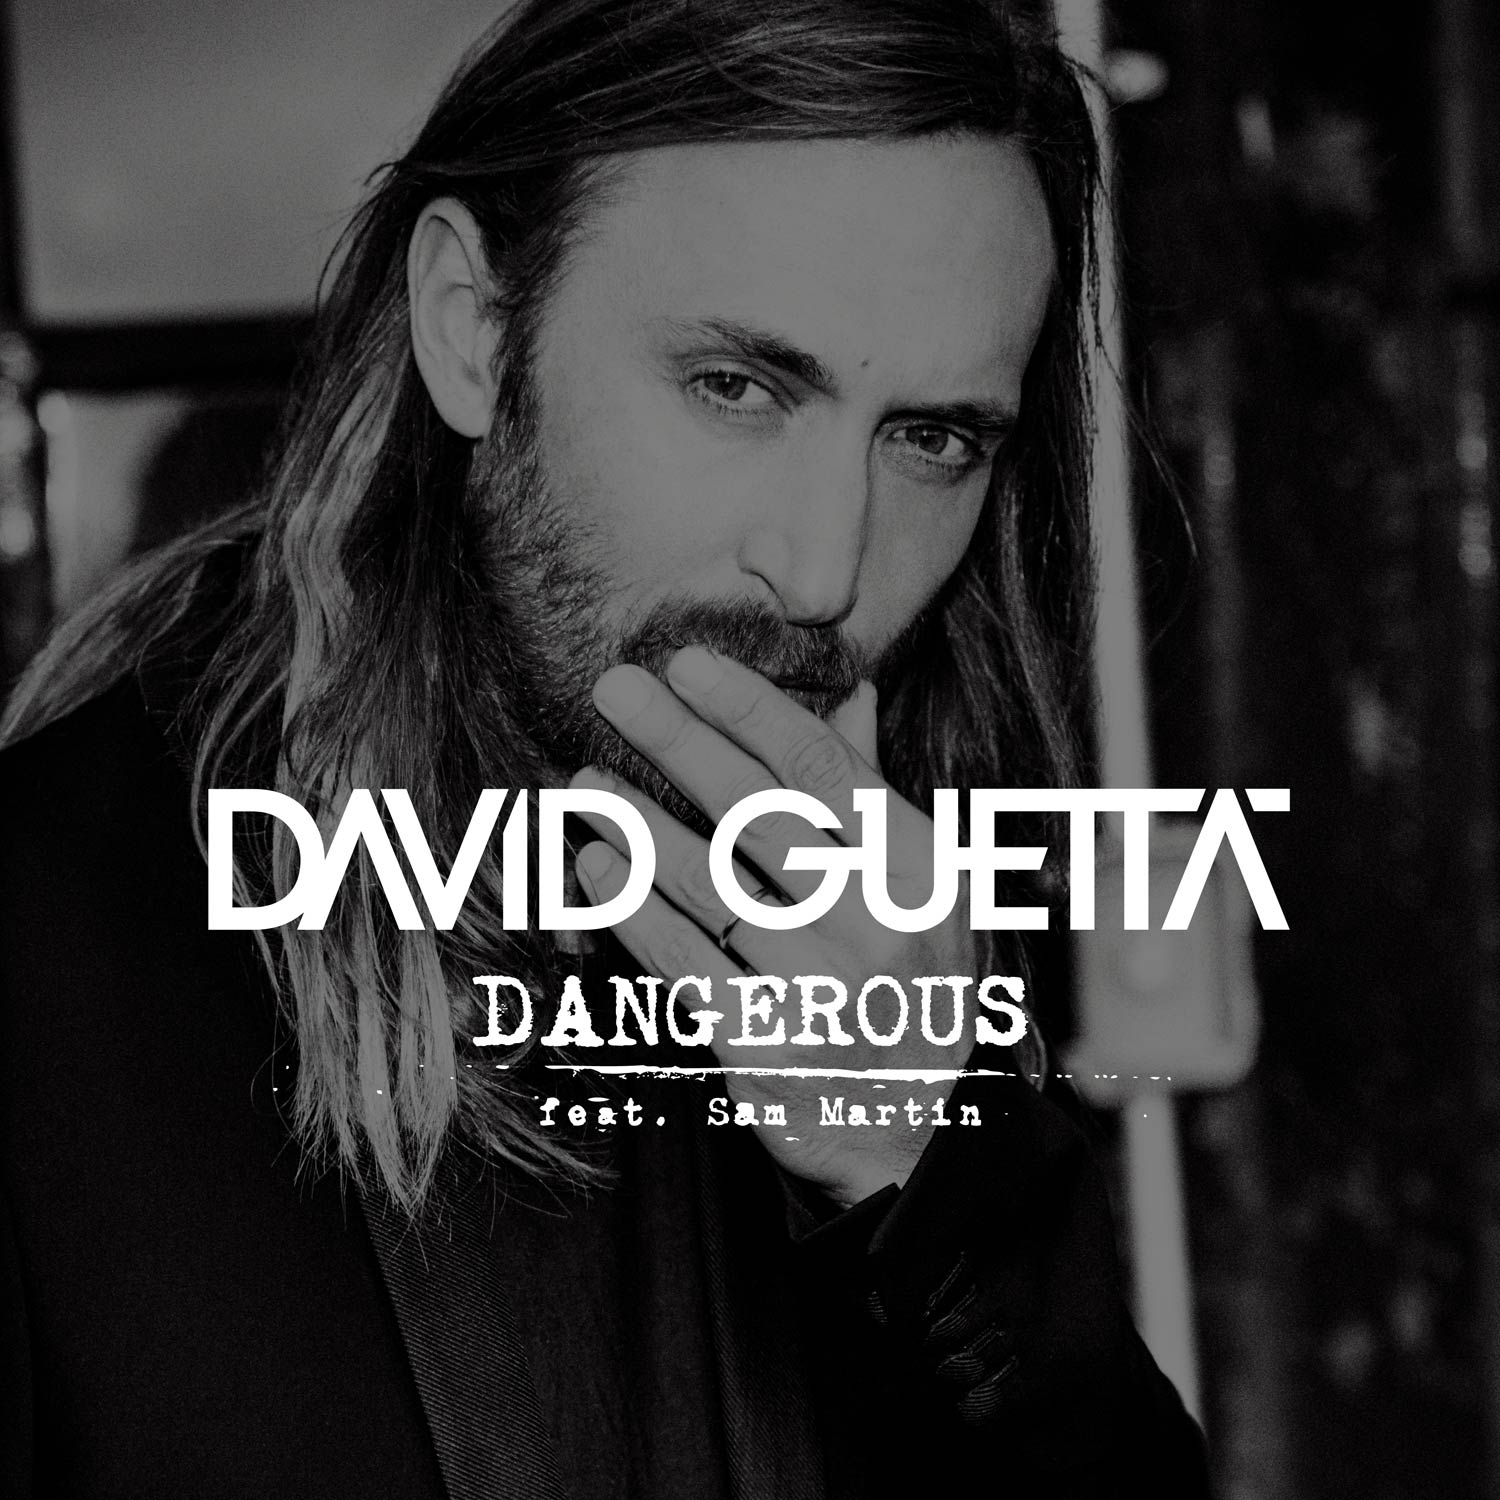 David Guetta con Sam Martin: Dangerous, la portada de la canción